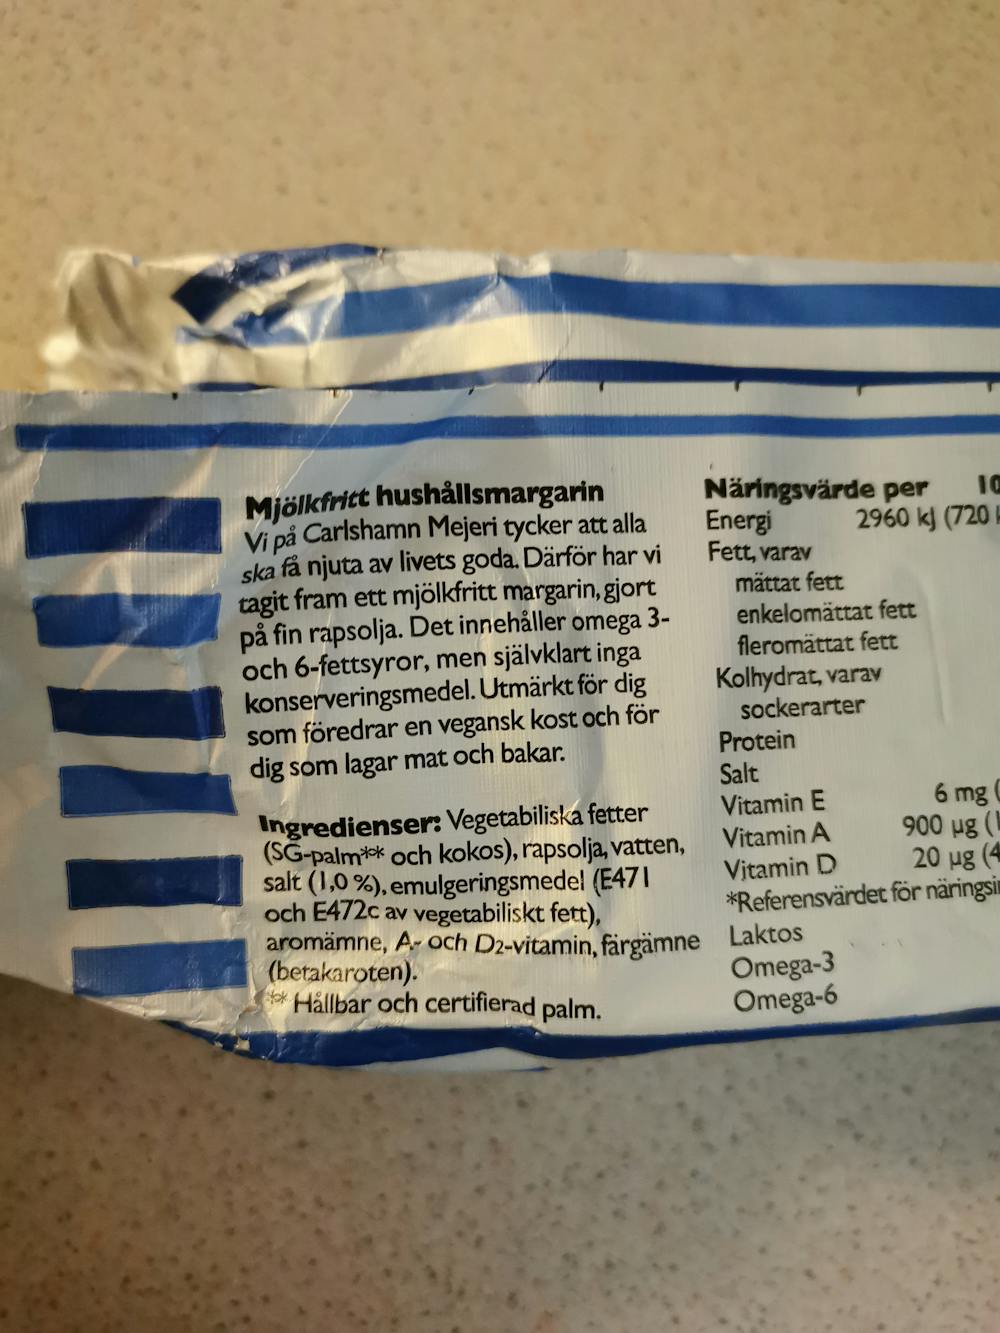 Ingredienslisten til Mjölkefritt hushållsmargarin, Carlshamn